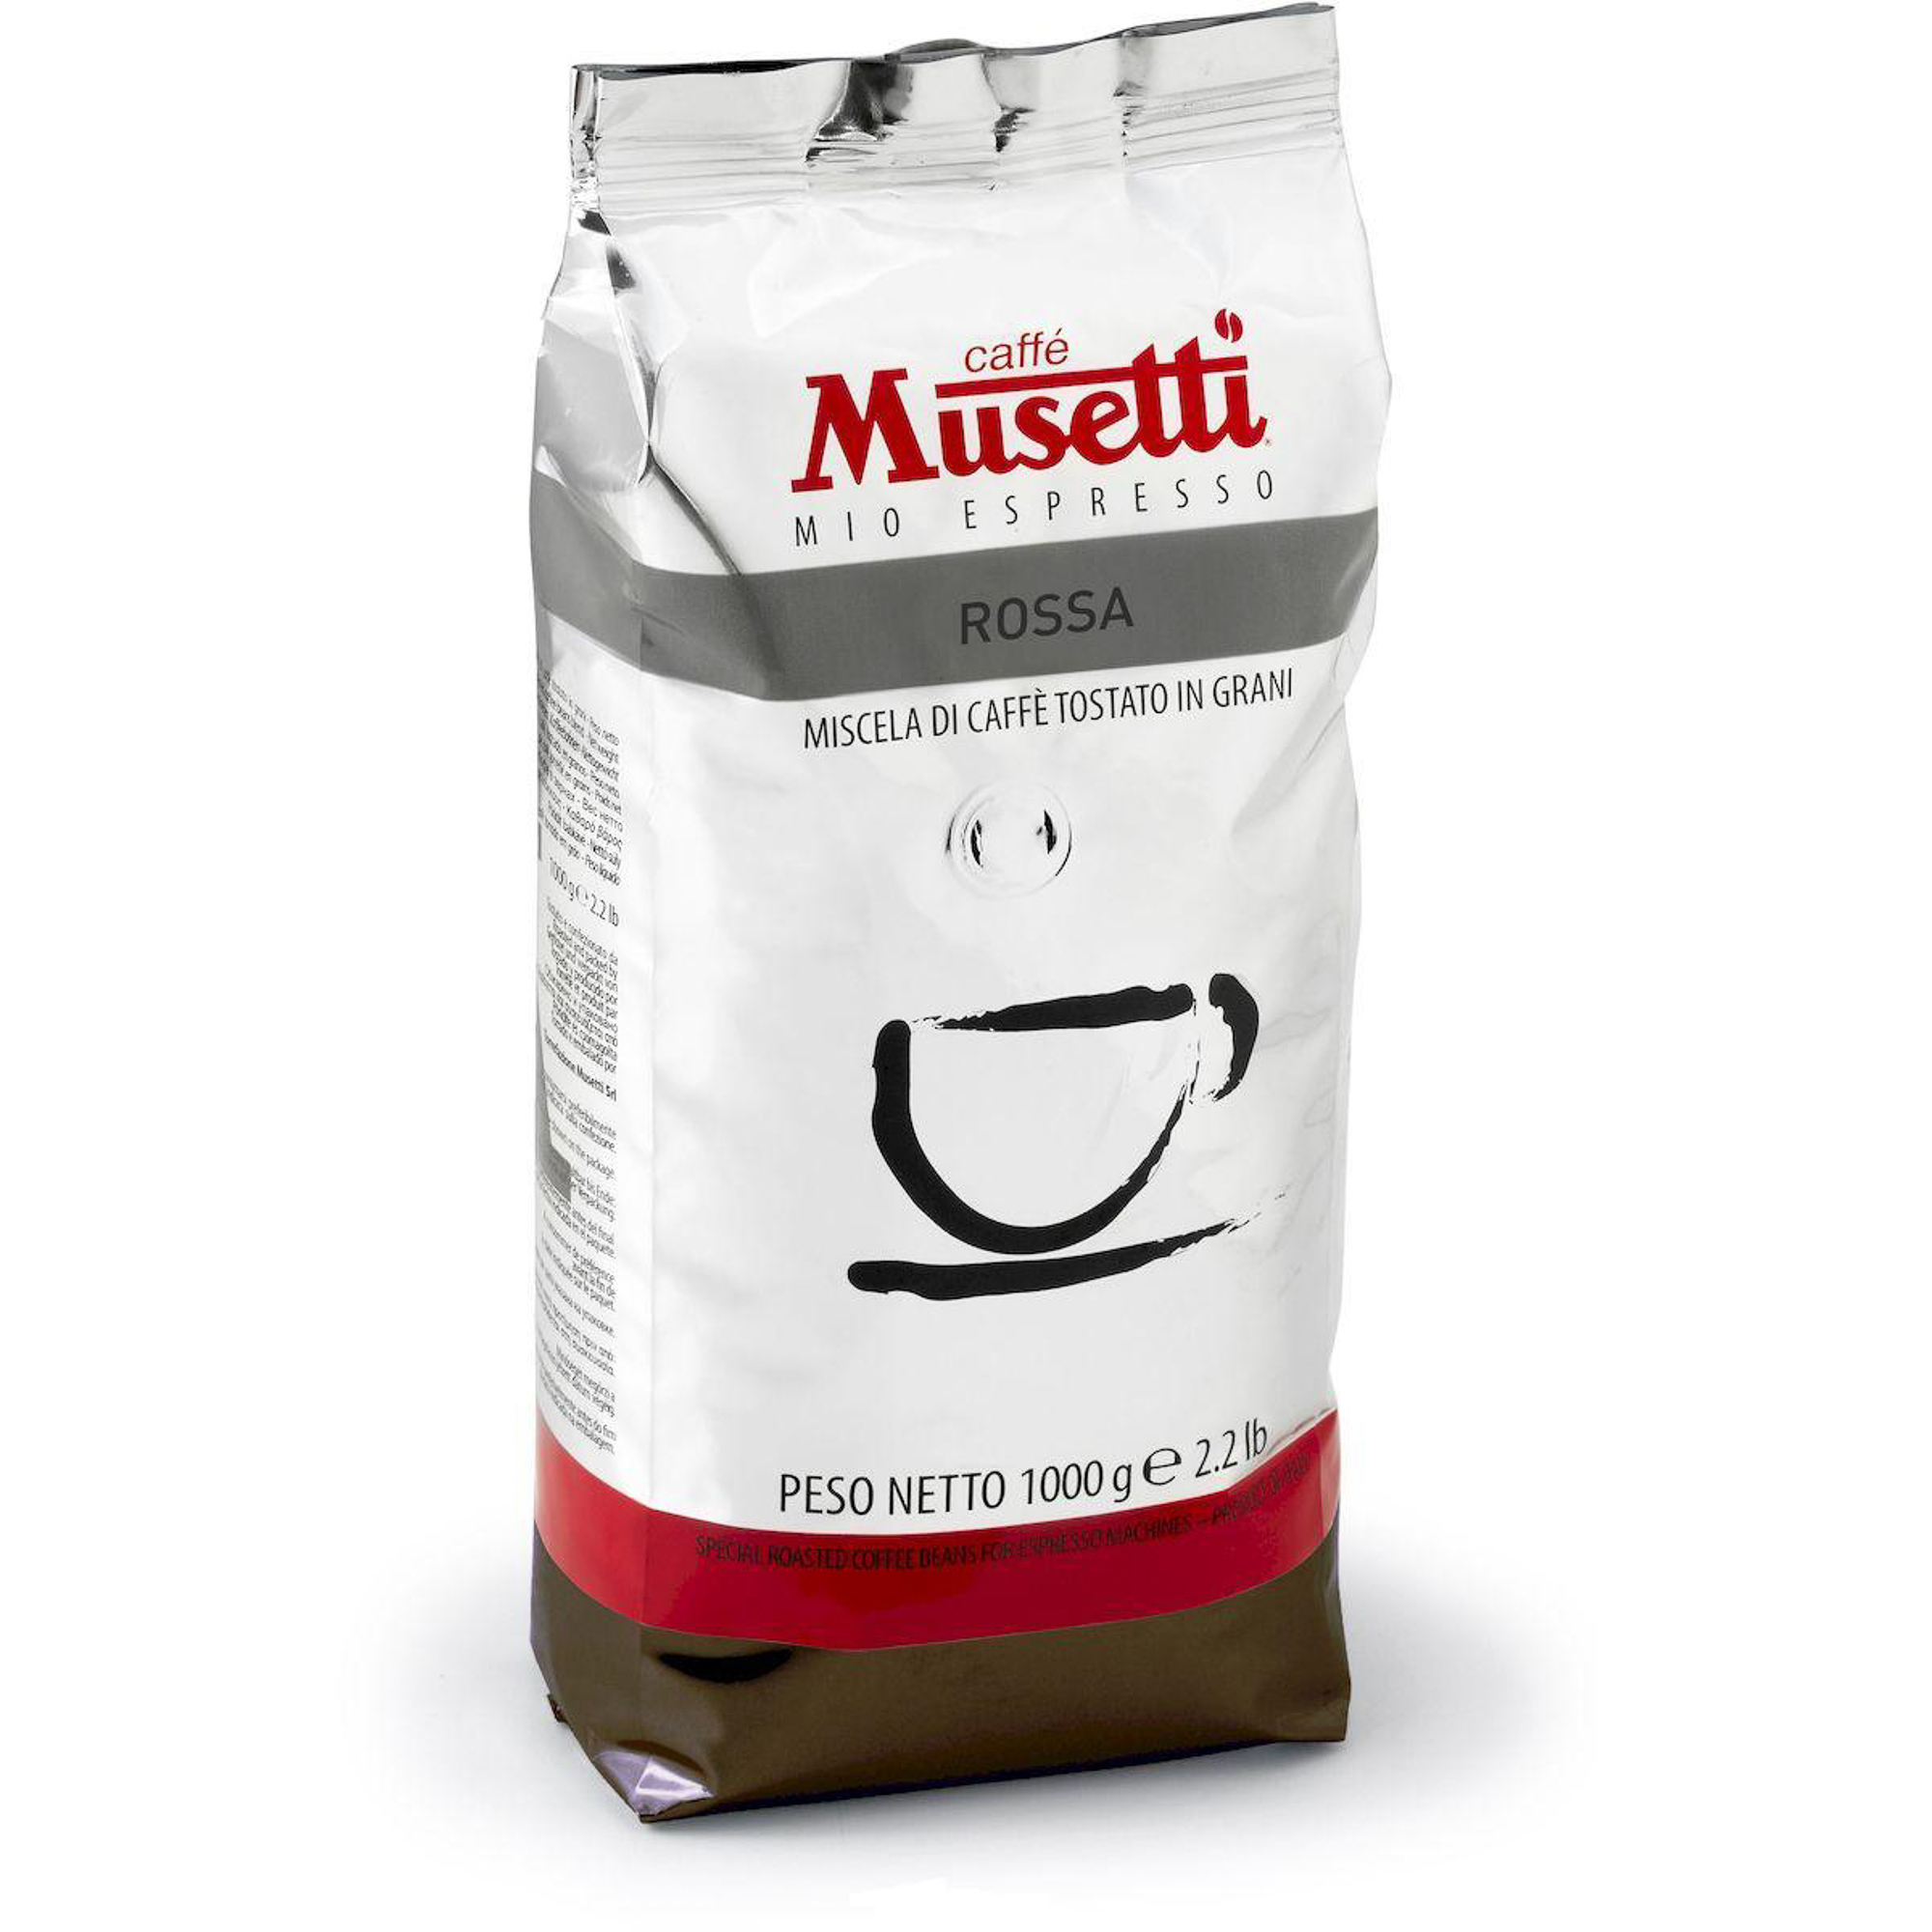 Кофе в зернах 1 кг робуста. Musetti Cremissimo кофе. Кофе в зернах Musetti. Musetti кофе Rossa. Musetti Cremissimo 1 кг.